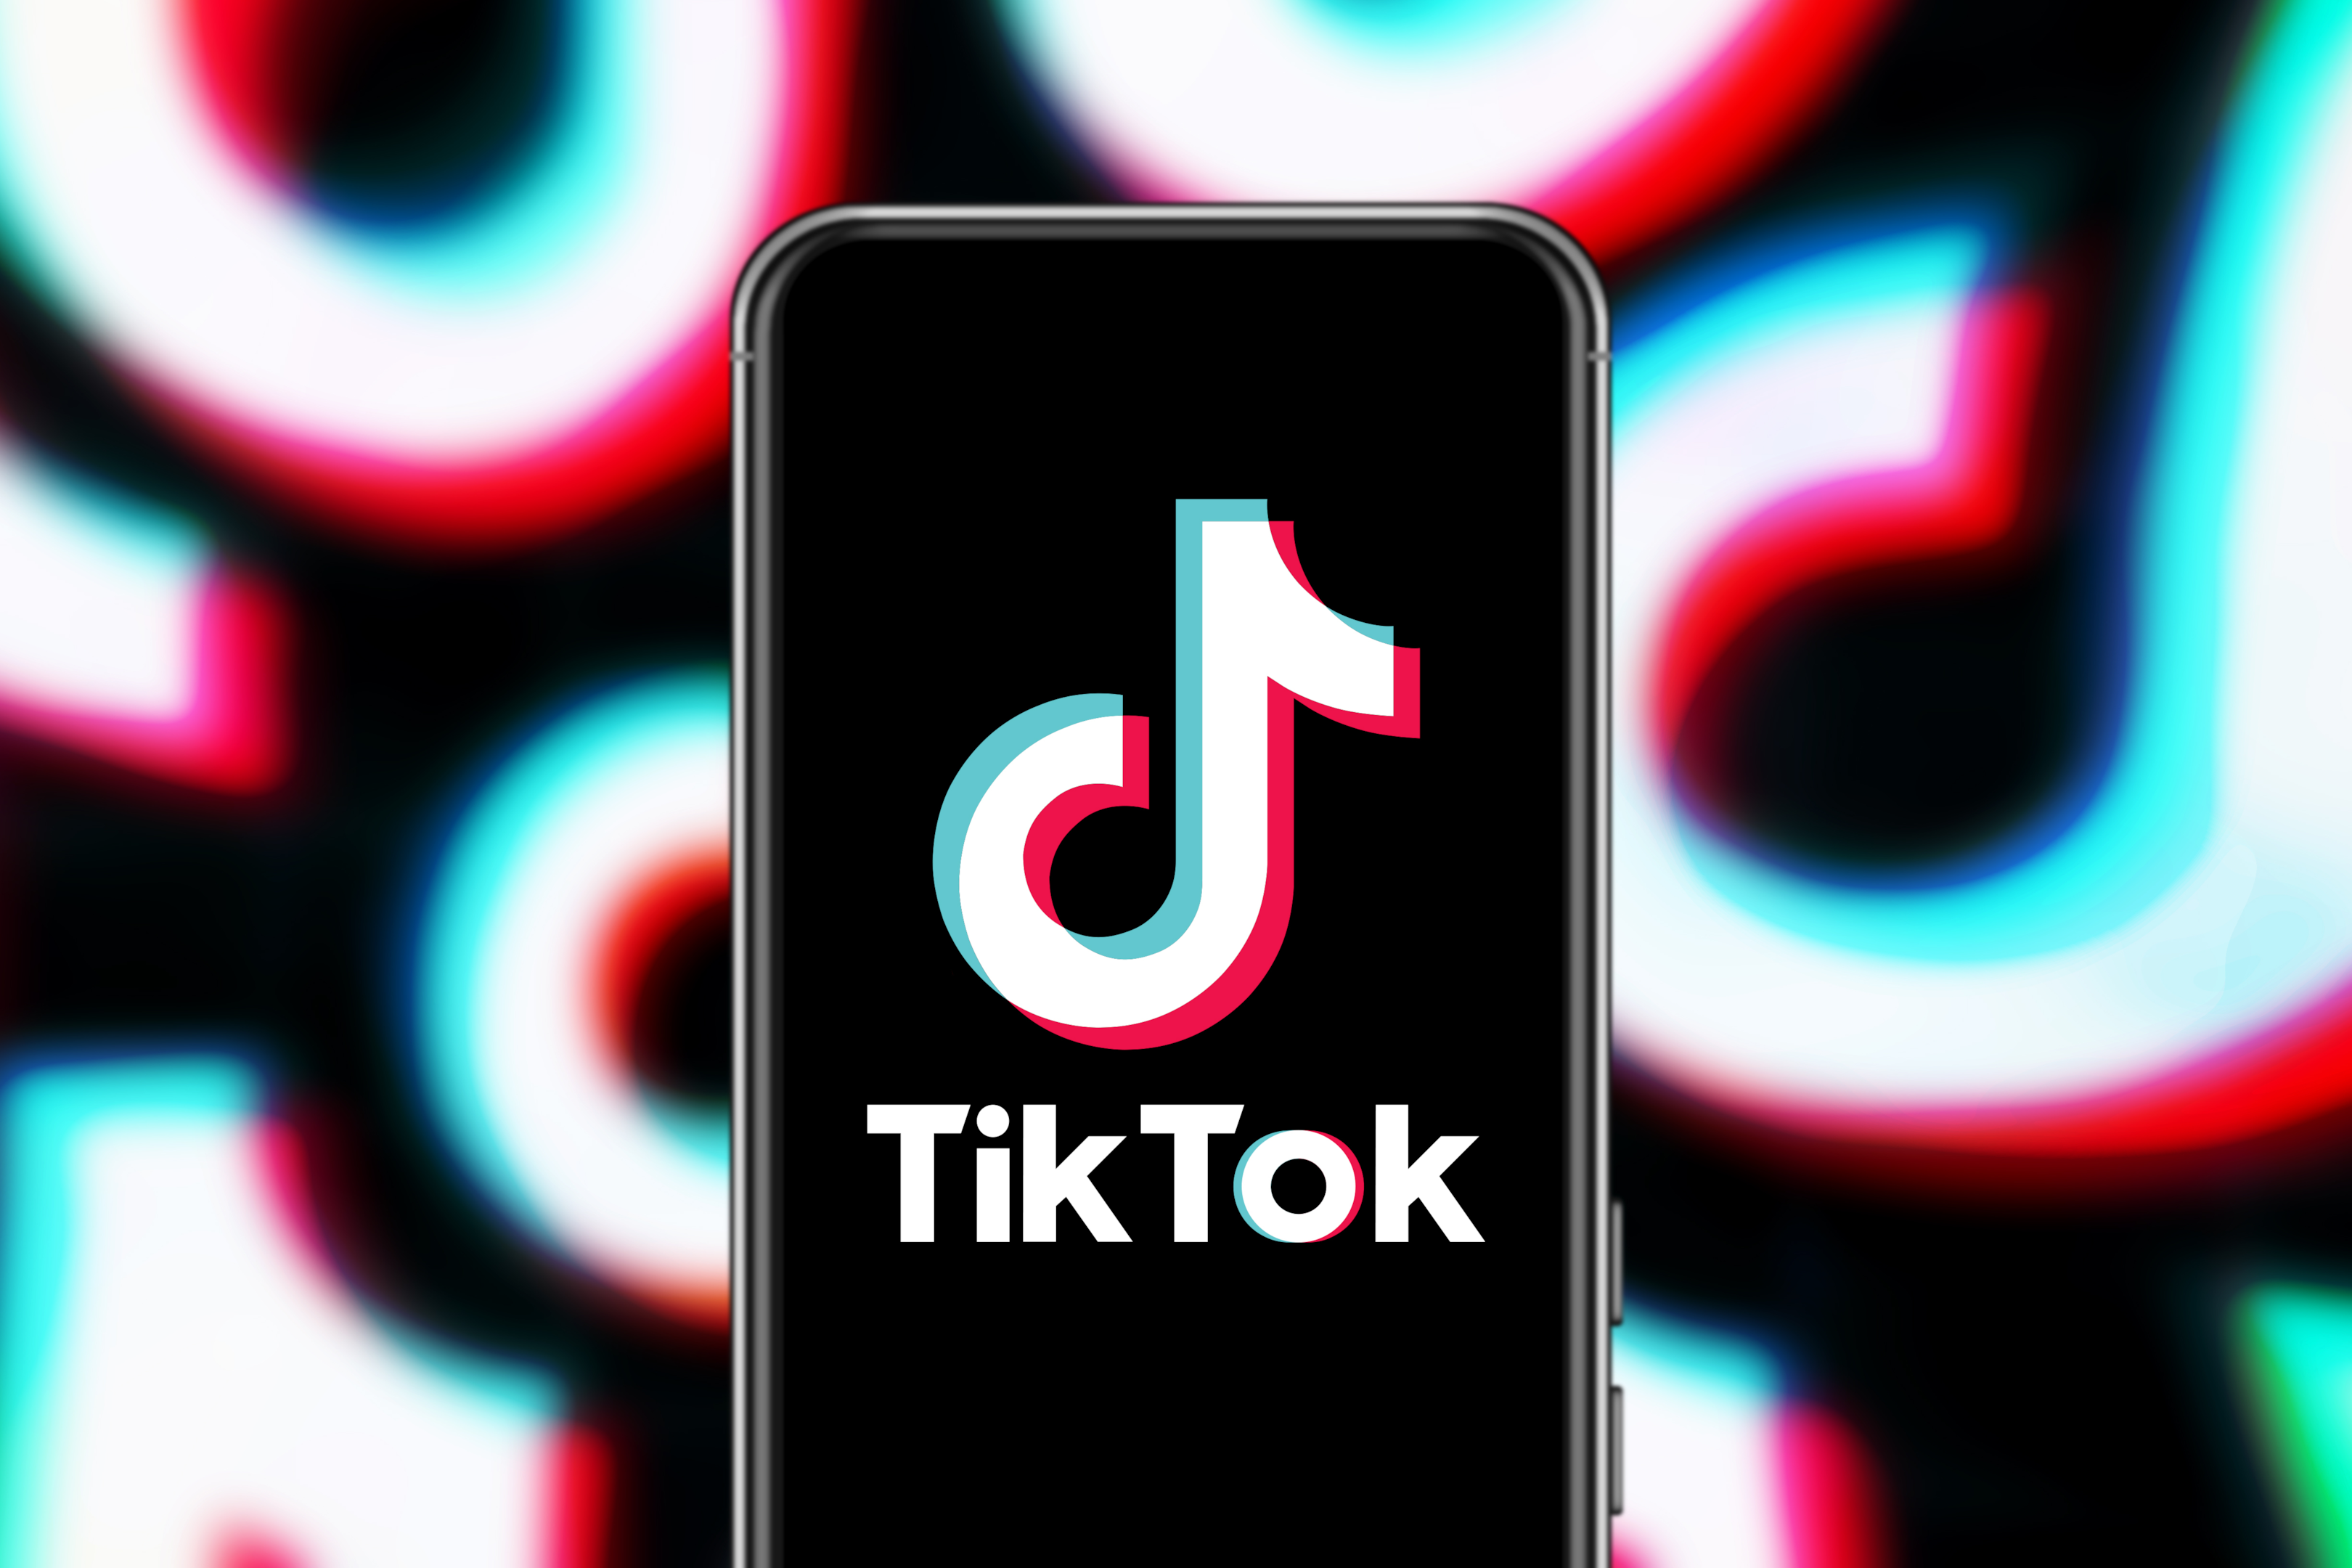 Auf der Plattform TikTok dreht sich alles um unterhaltsame kurze Video-Clips. 